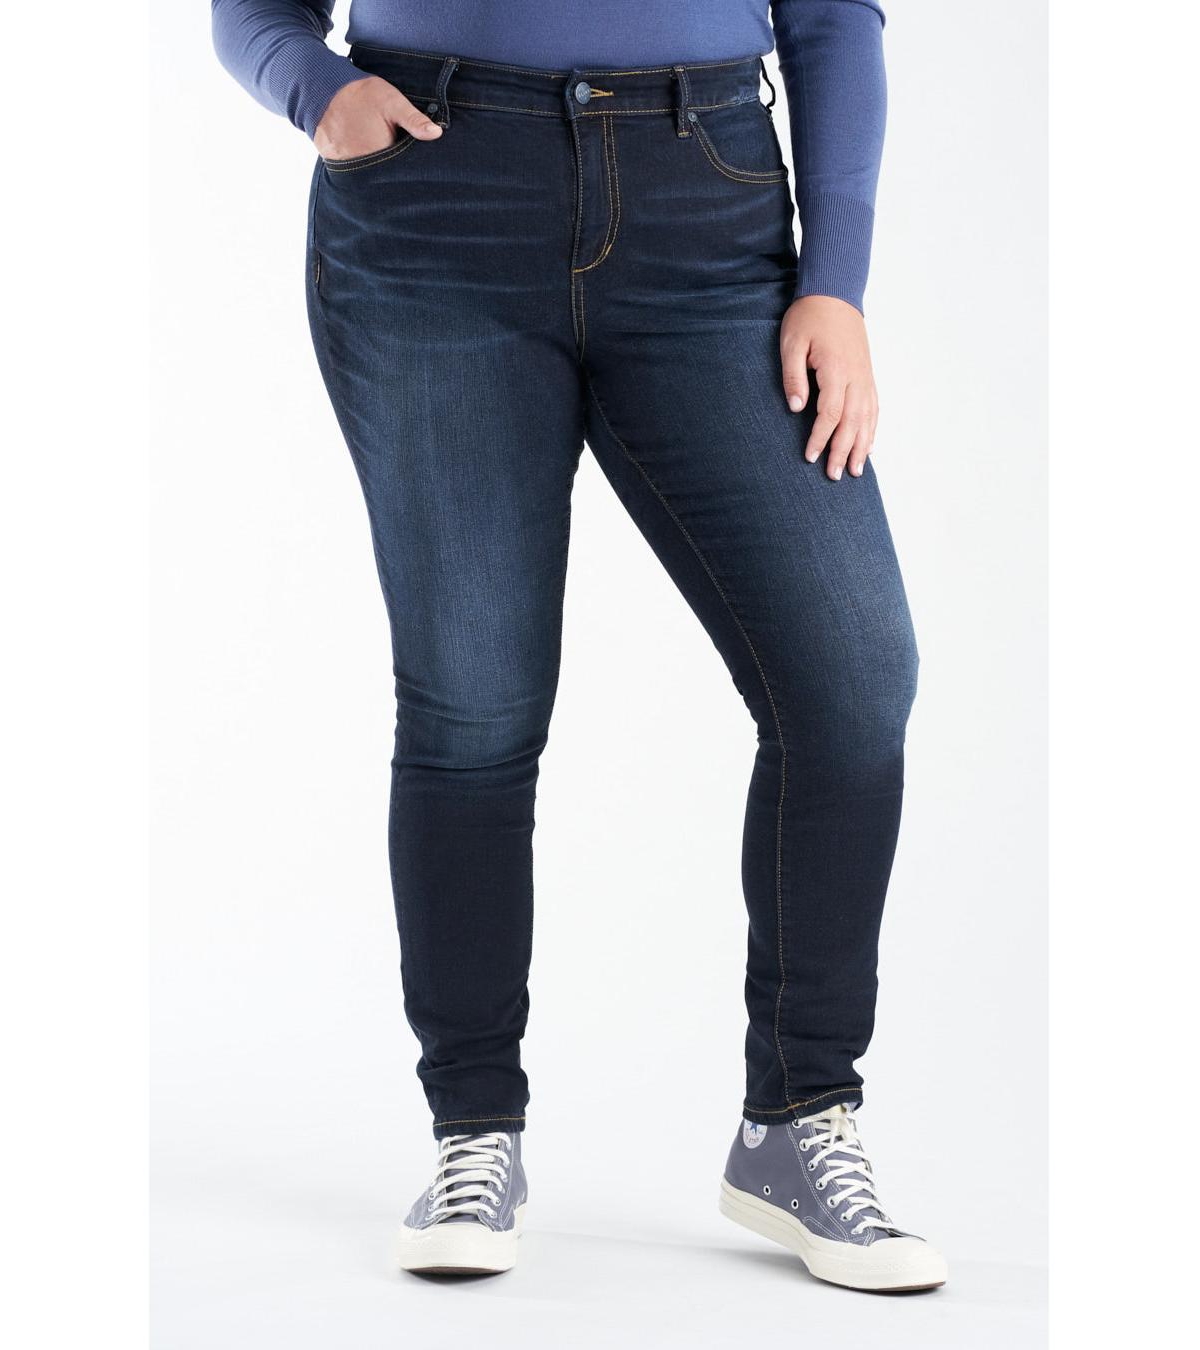 Women's High Rise Skinny Jeans - Tenley